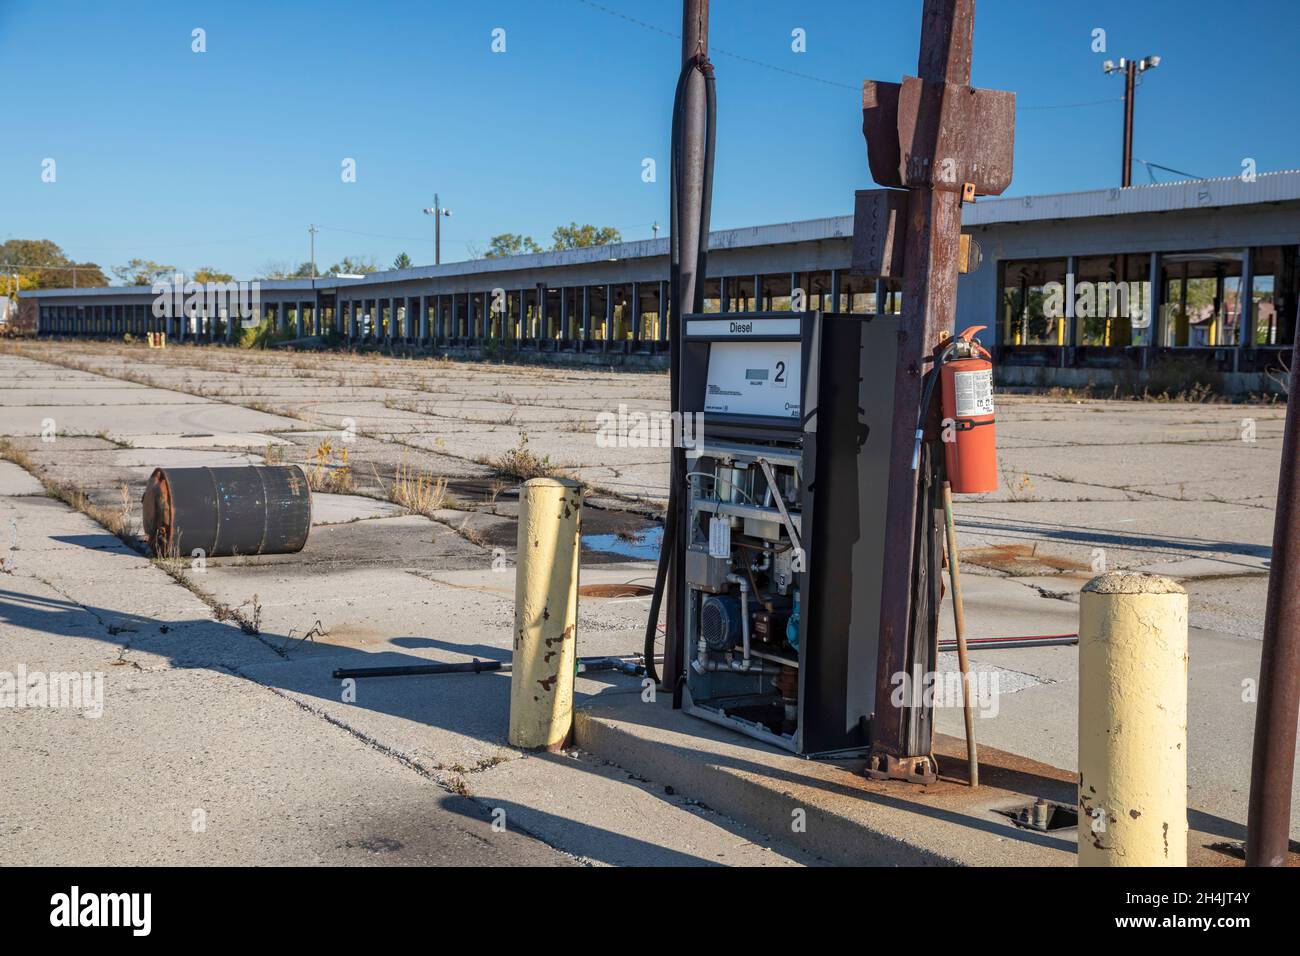 Detroit, Michigan - una pompa diesel e banchine di carico in un terminal di camion abbandonato, precedentemente gestito da Universal Truckload Services. Foto Stock